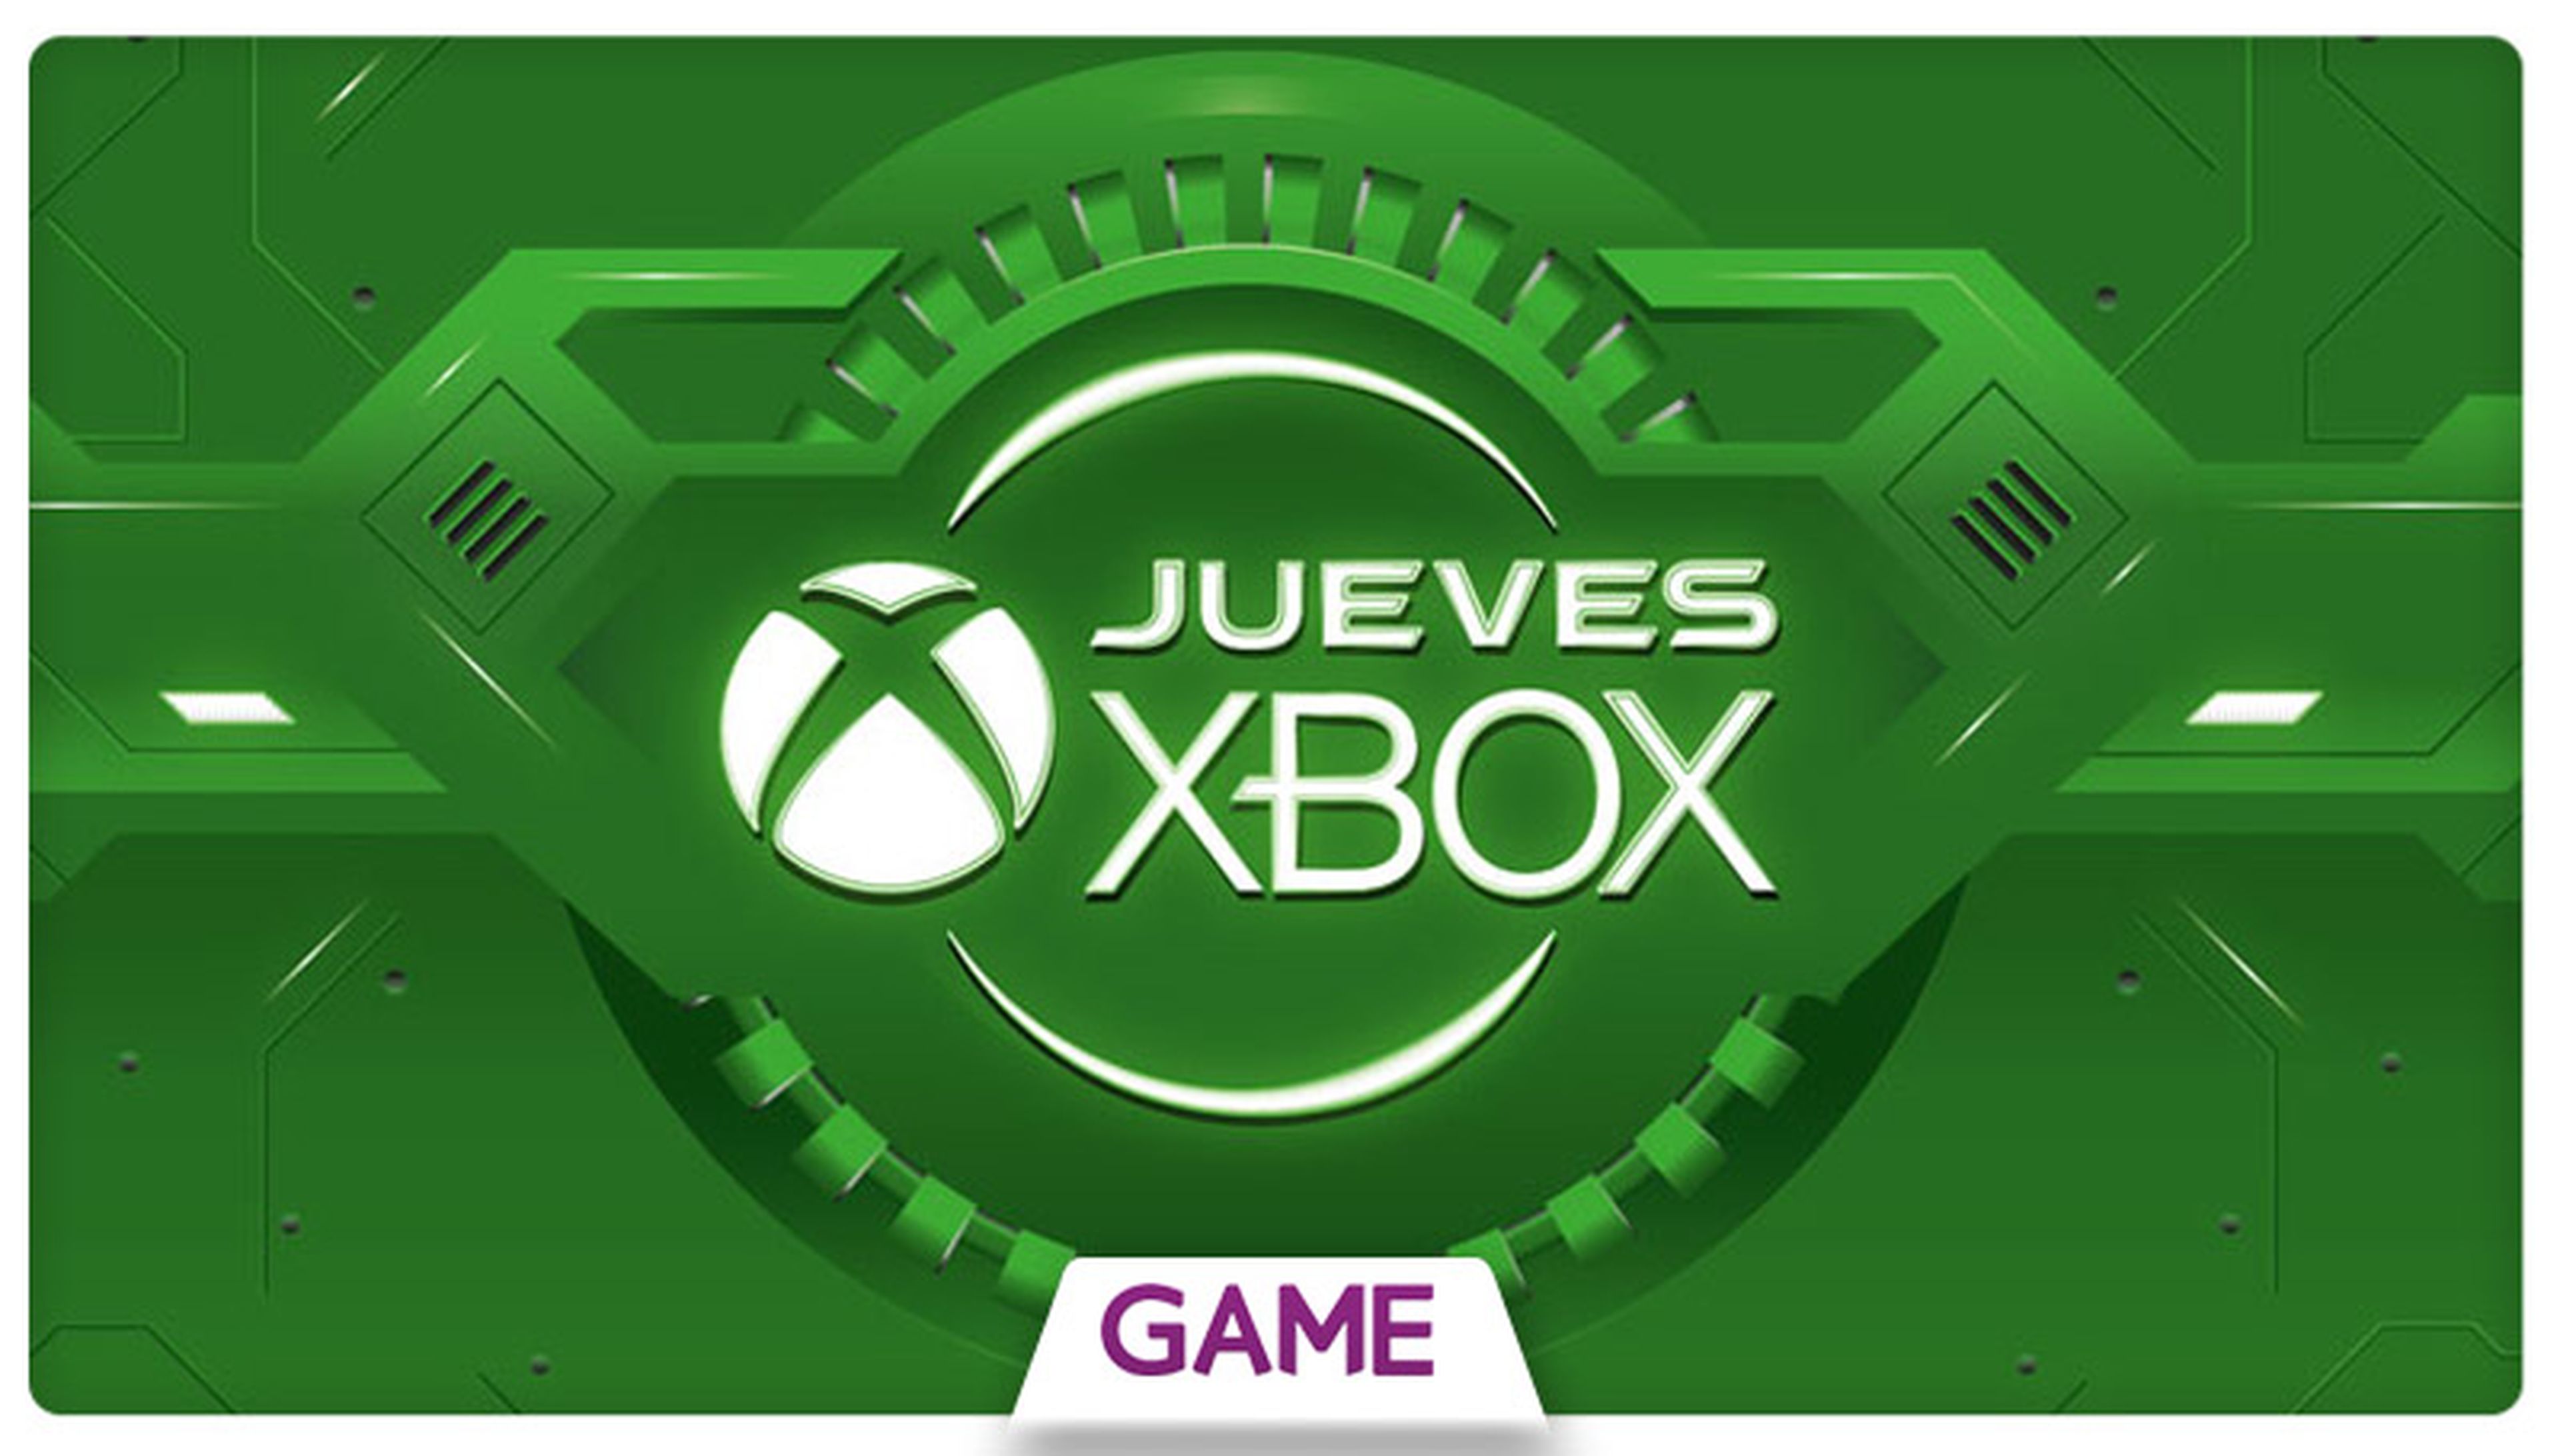 Jueves Xbox en GAME - Ofertas del 19/05/2016